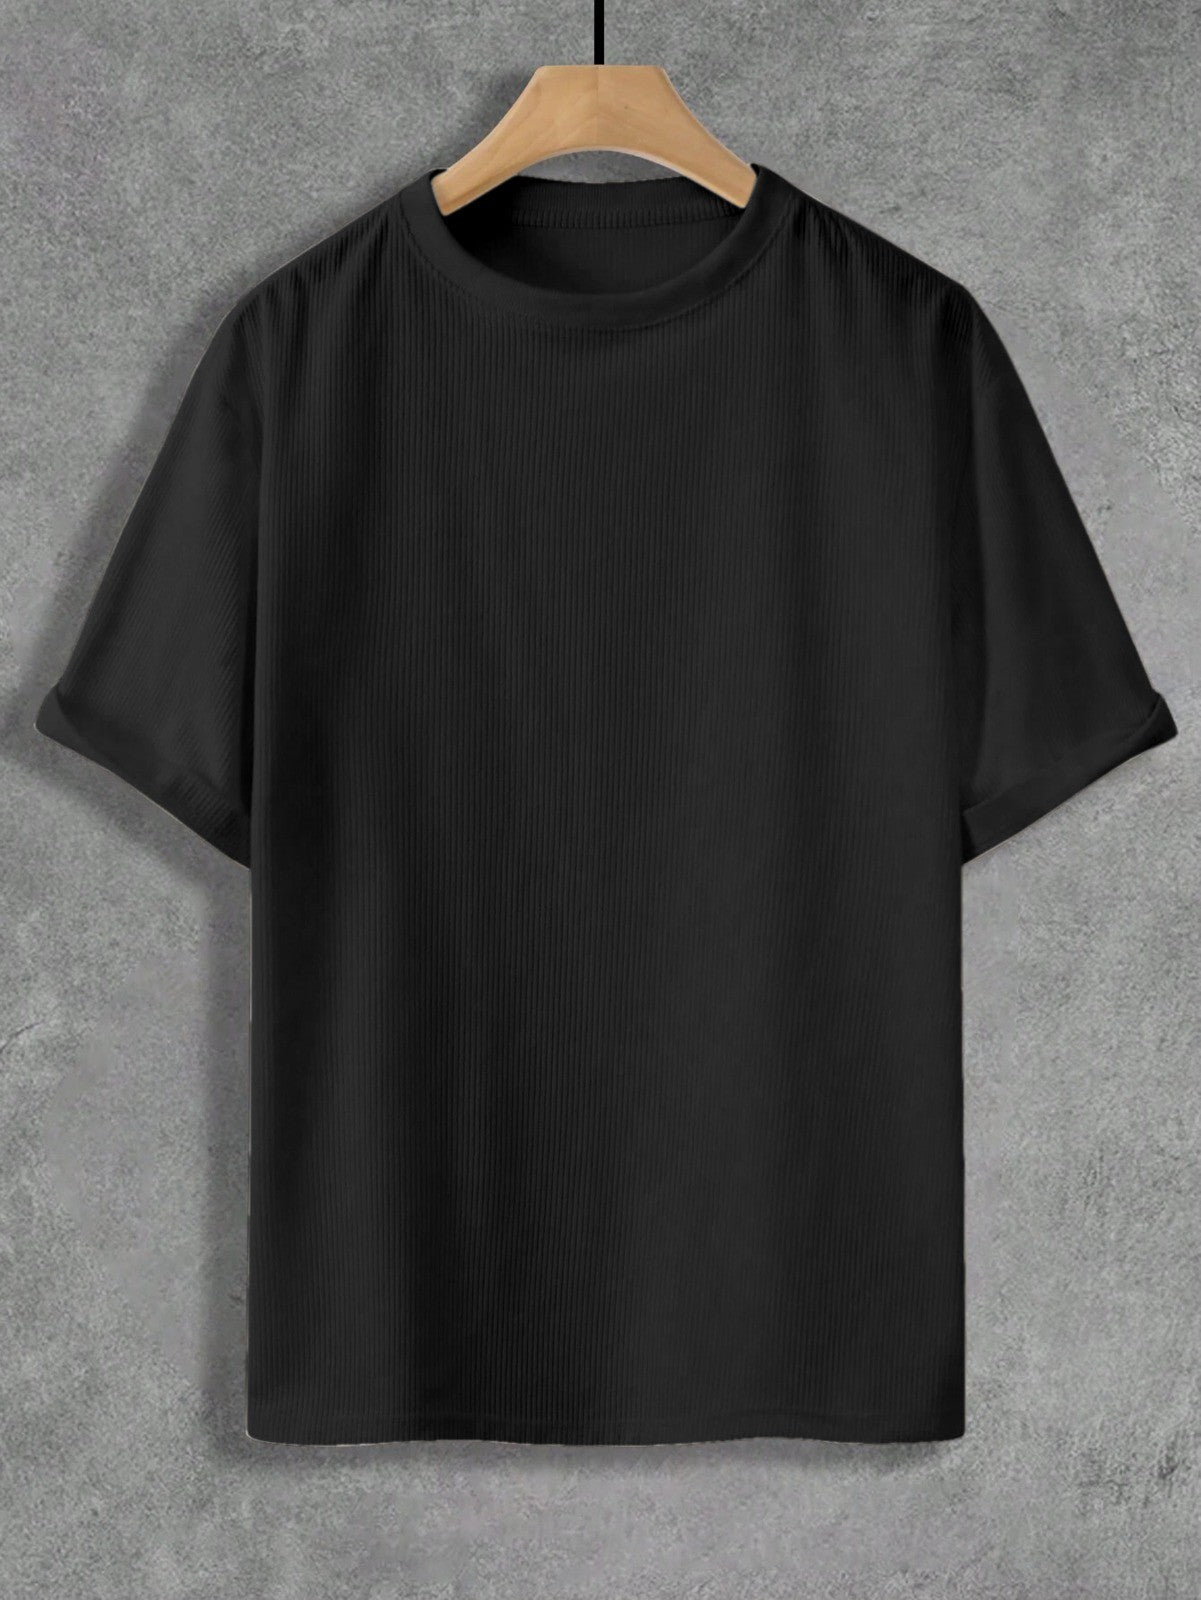 Executive Black Plain T-Shirt